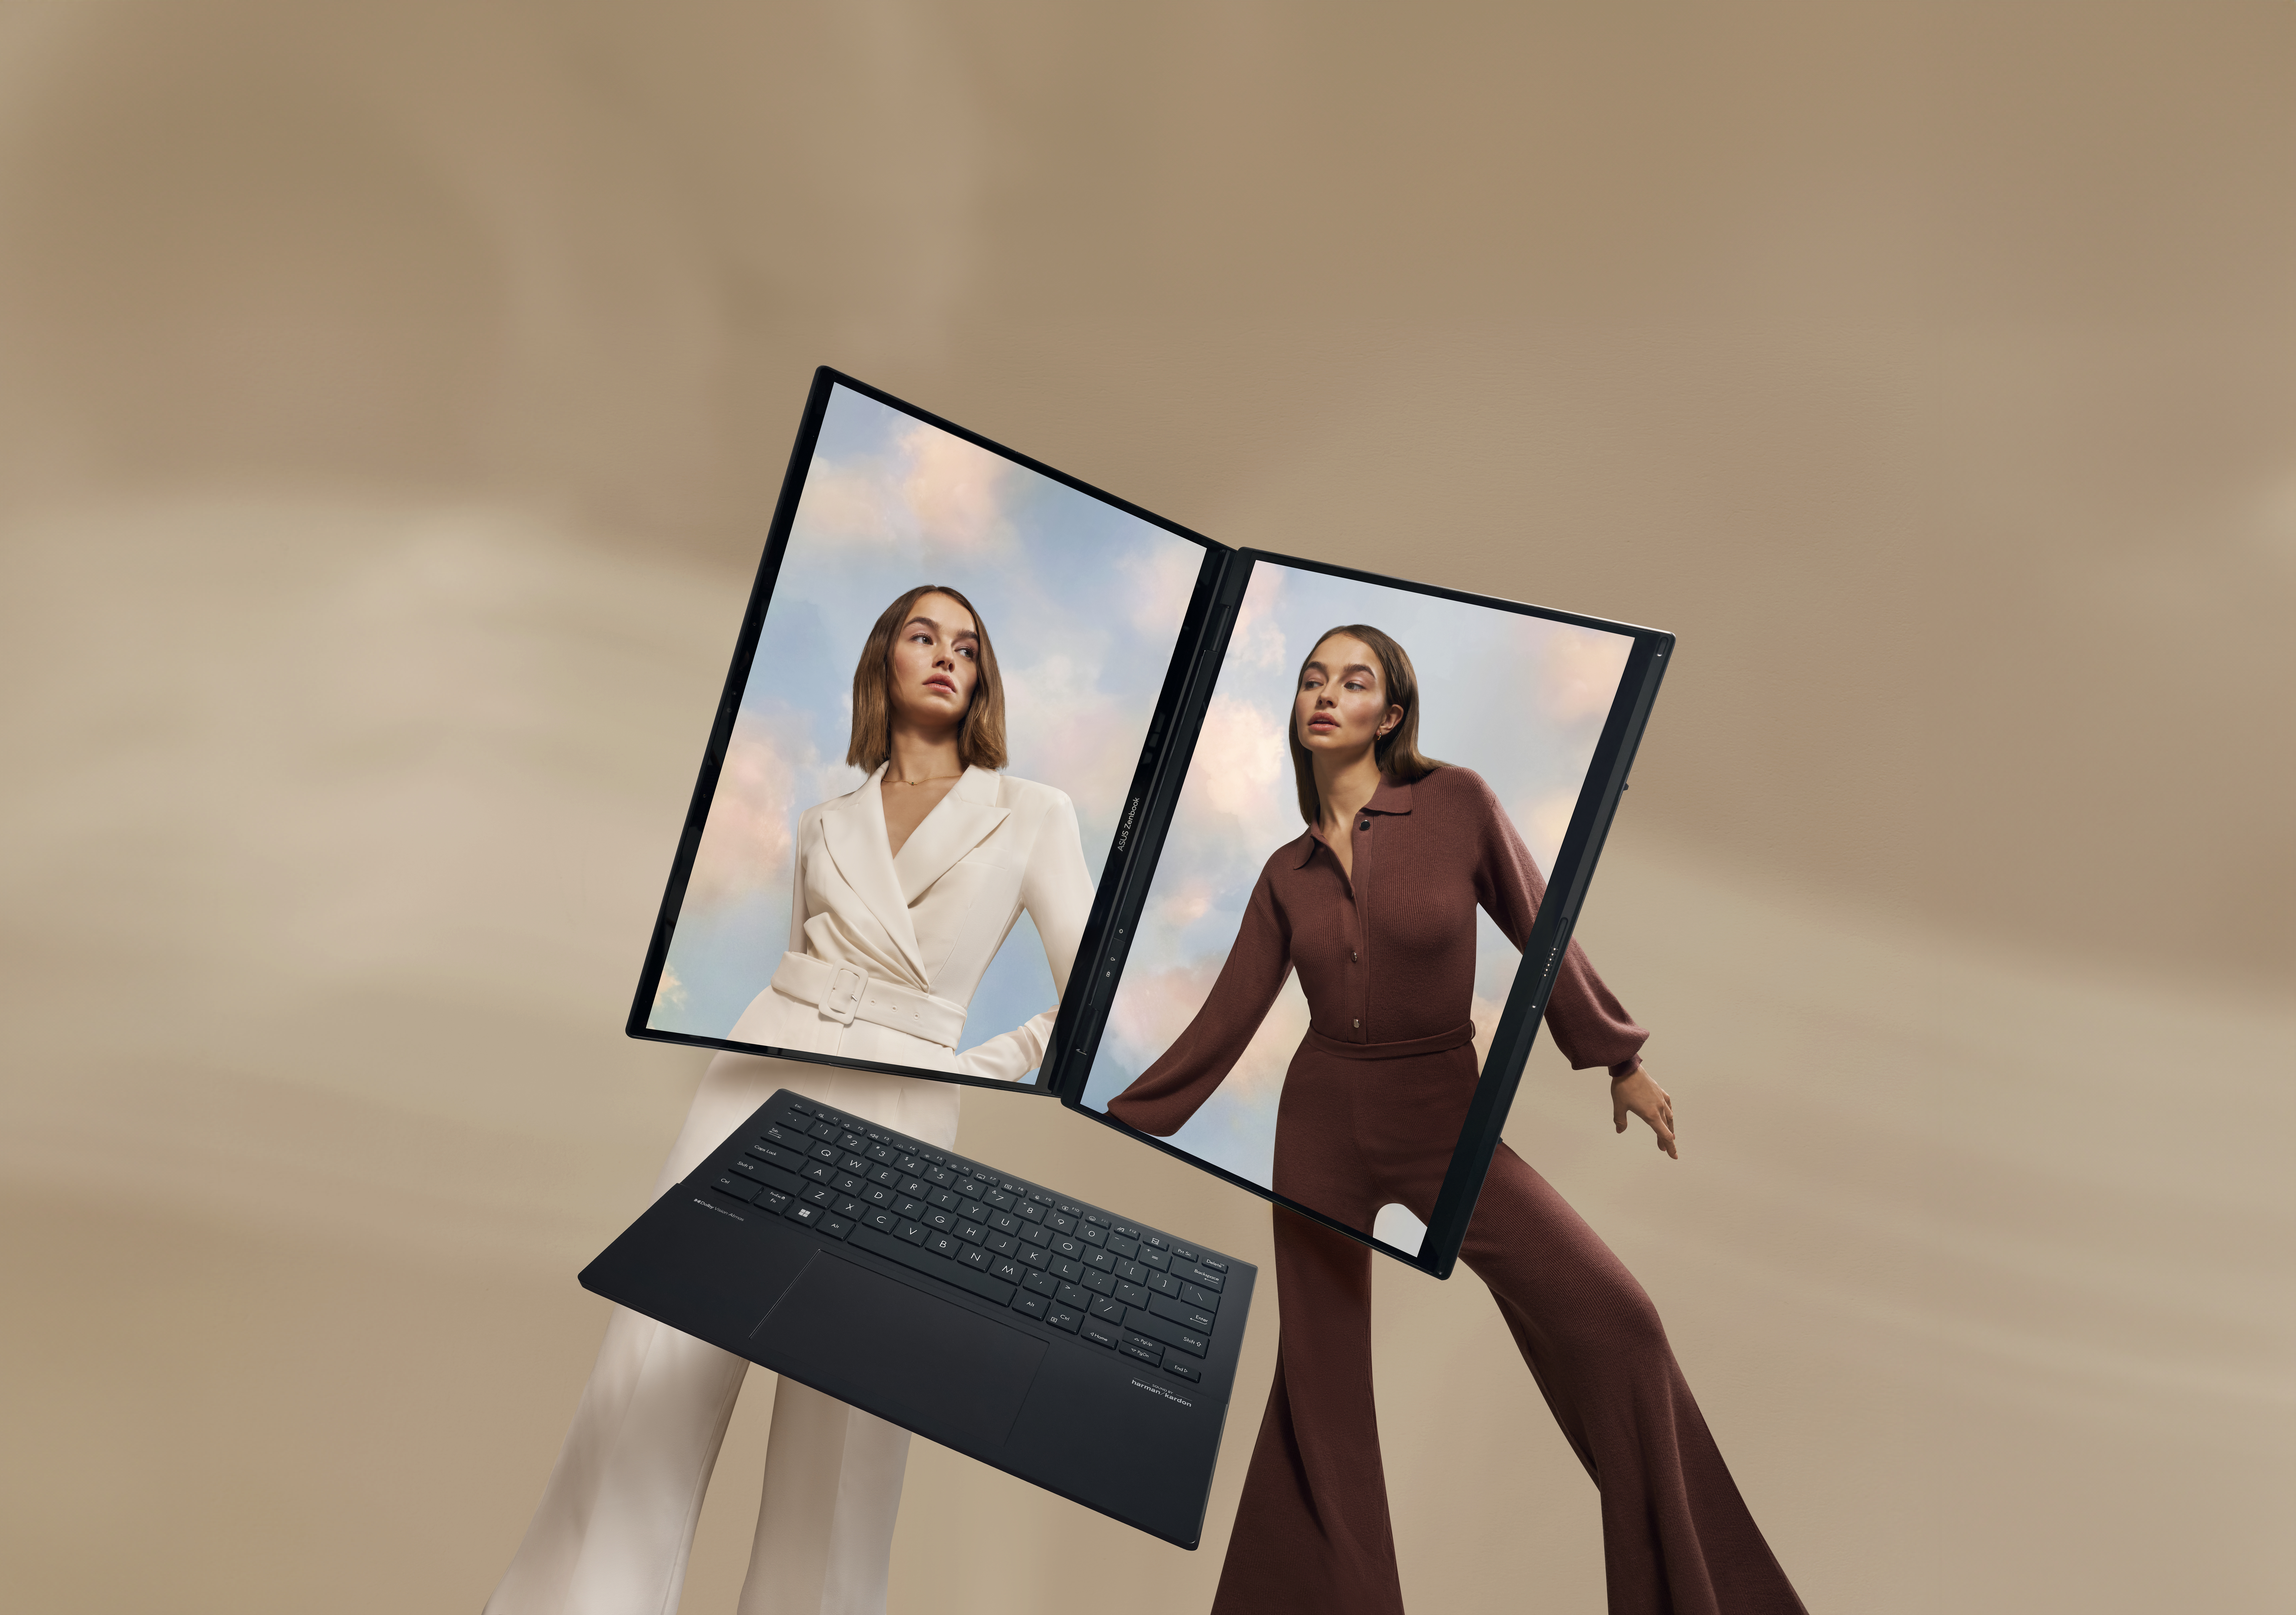 Putere dublă. Descoperiți noi orizonturi cu laptopul ASUS Zenbook Duo cu două ecrane